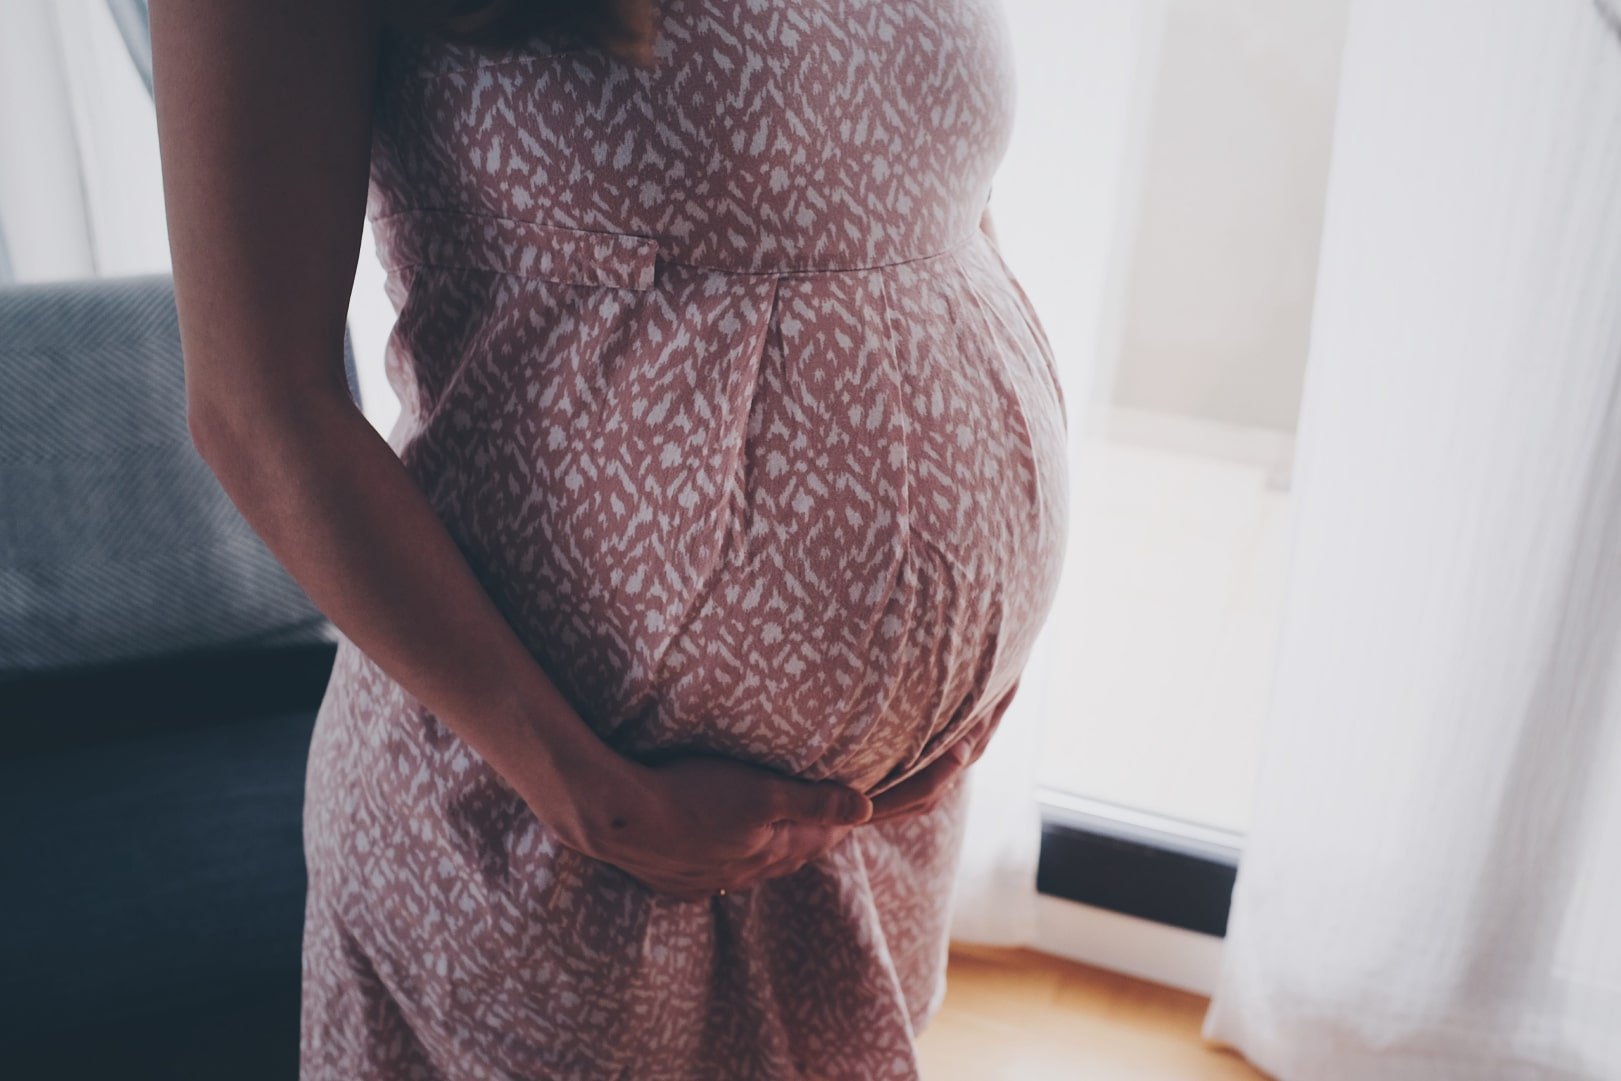 Surrogate pregnancy testimonial